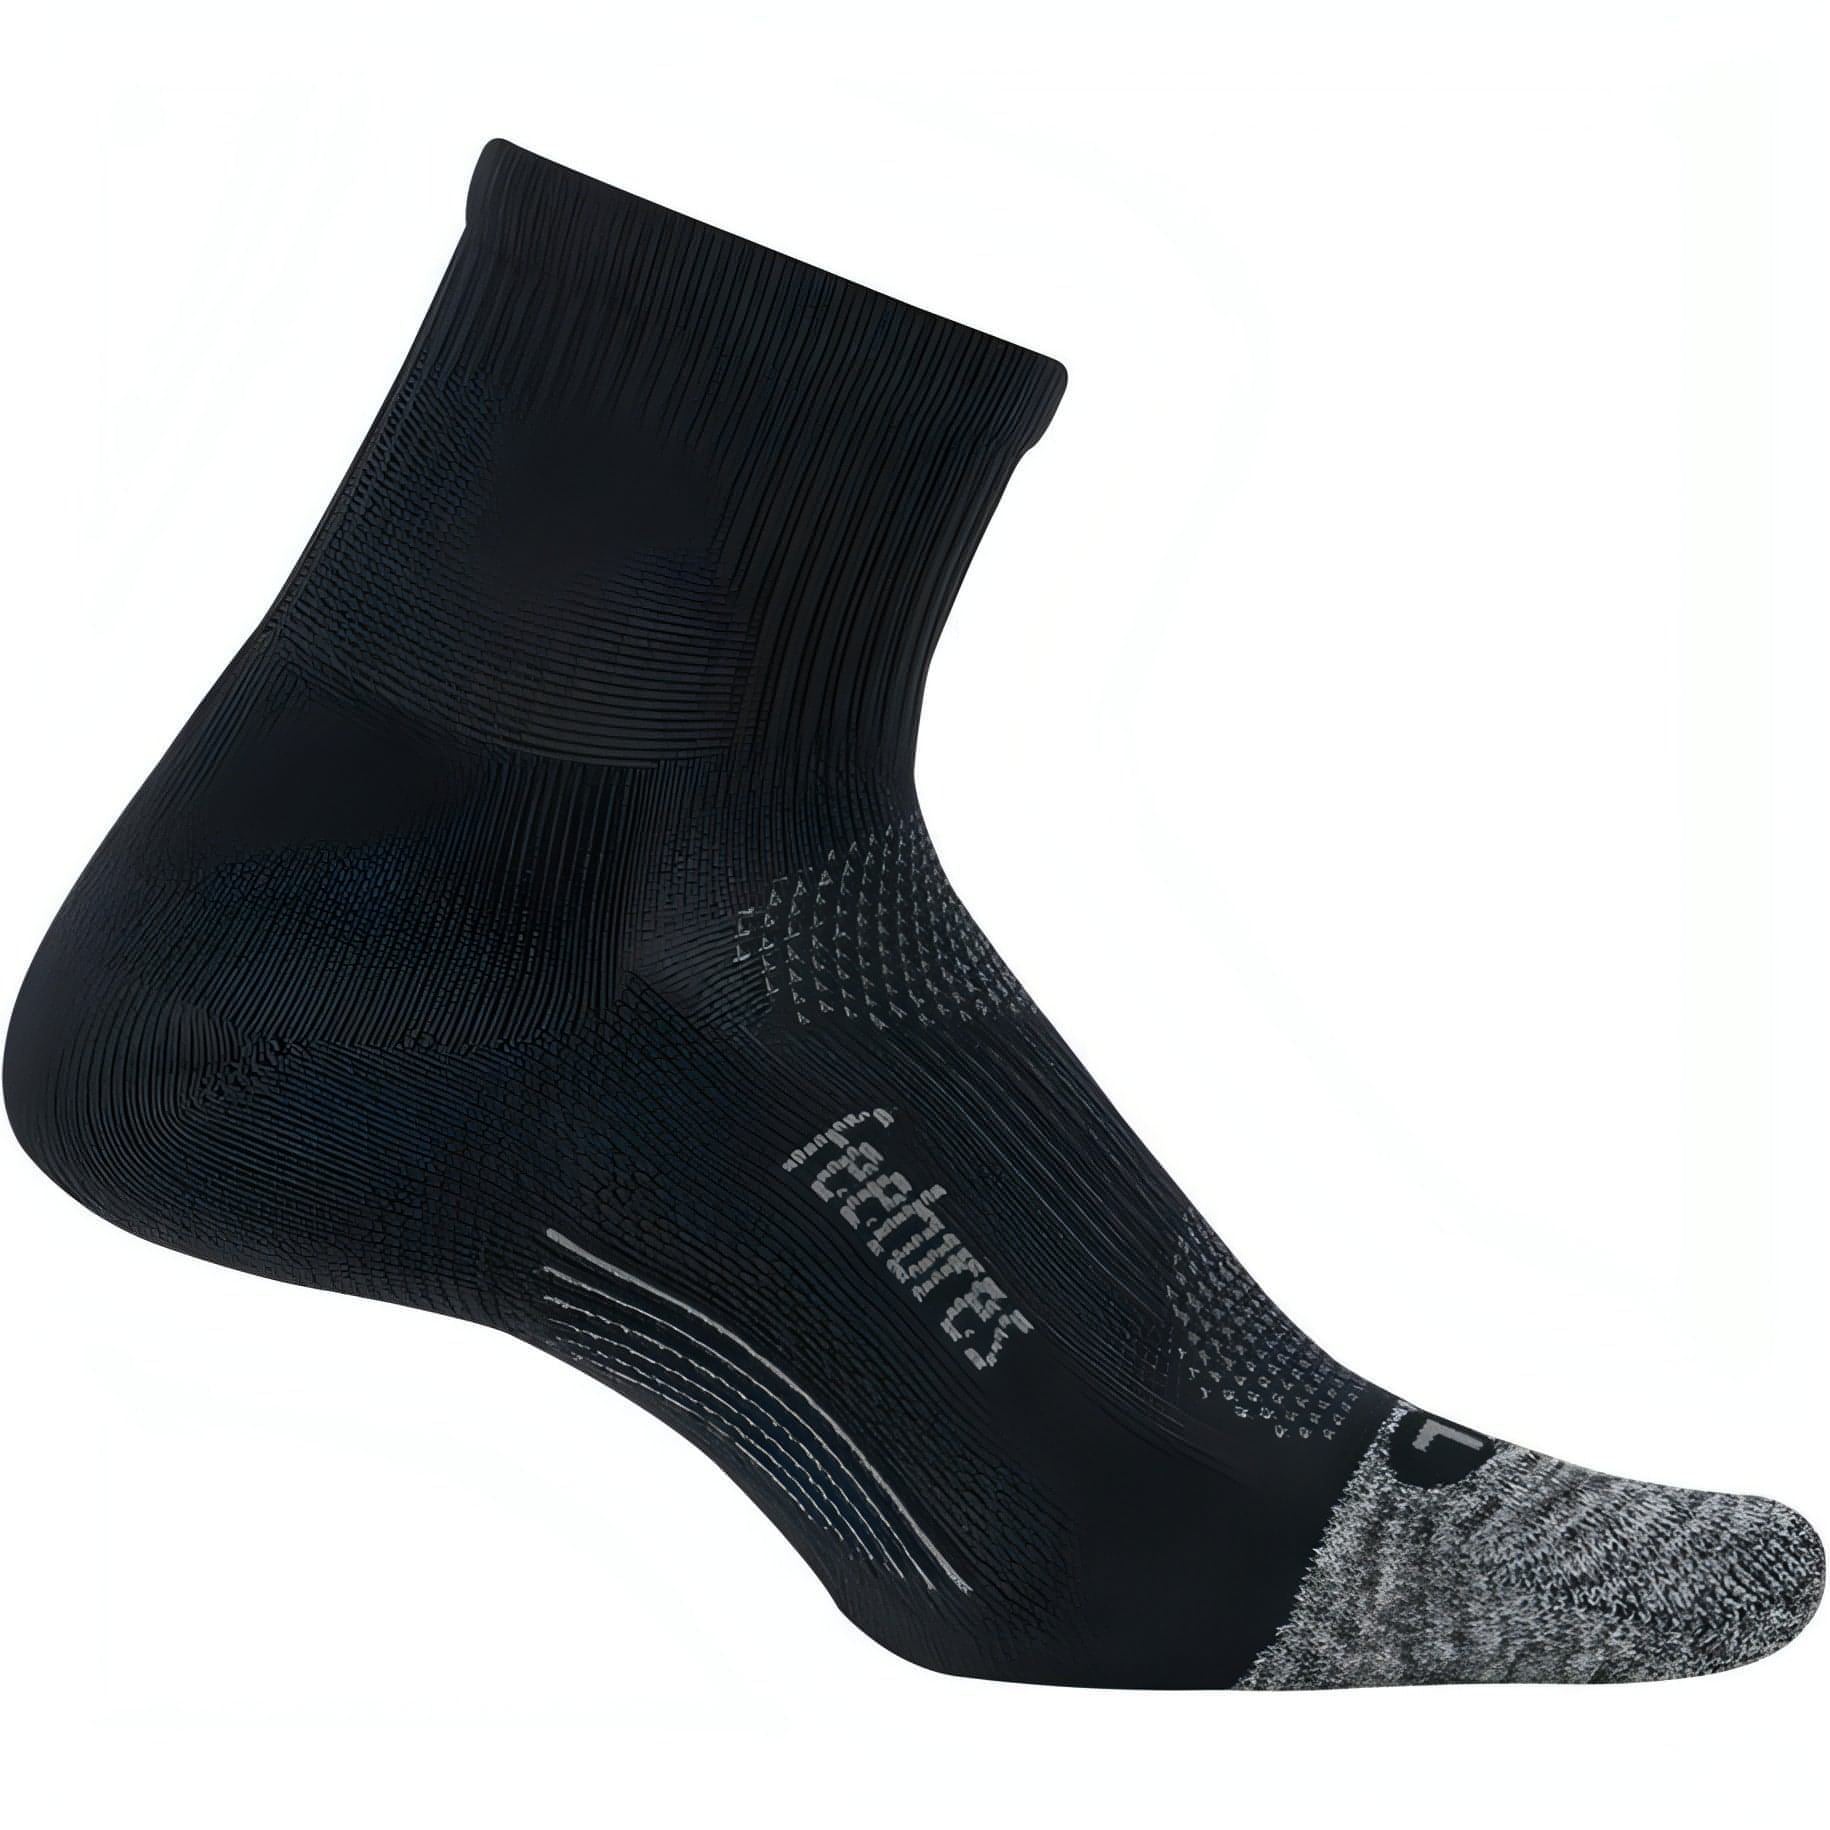 Feetures Elite Light Cushioning Quarter Running Socks - Black 840557122868 - Start Fitness